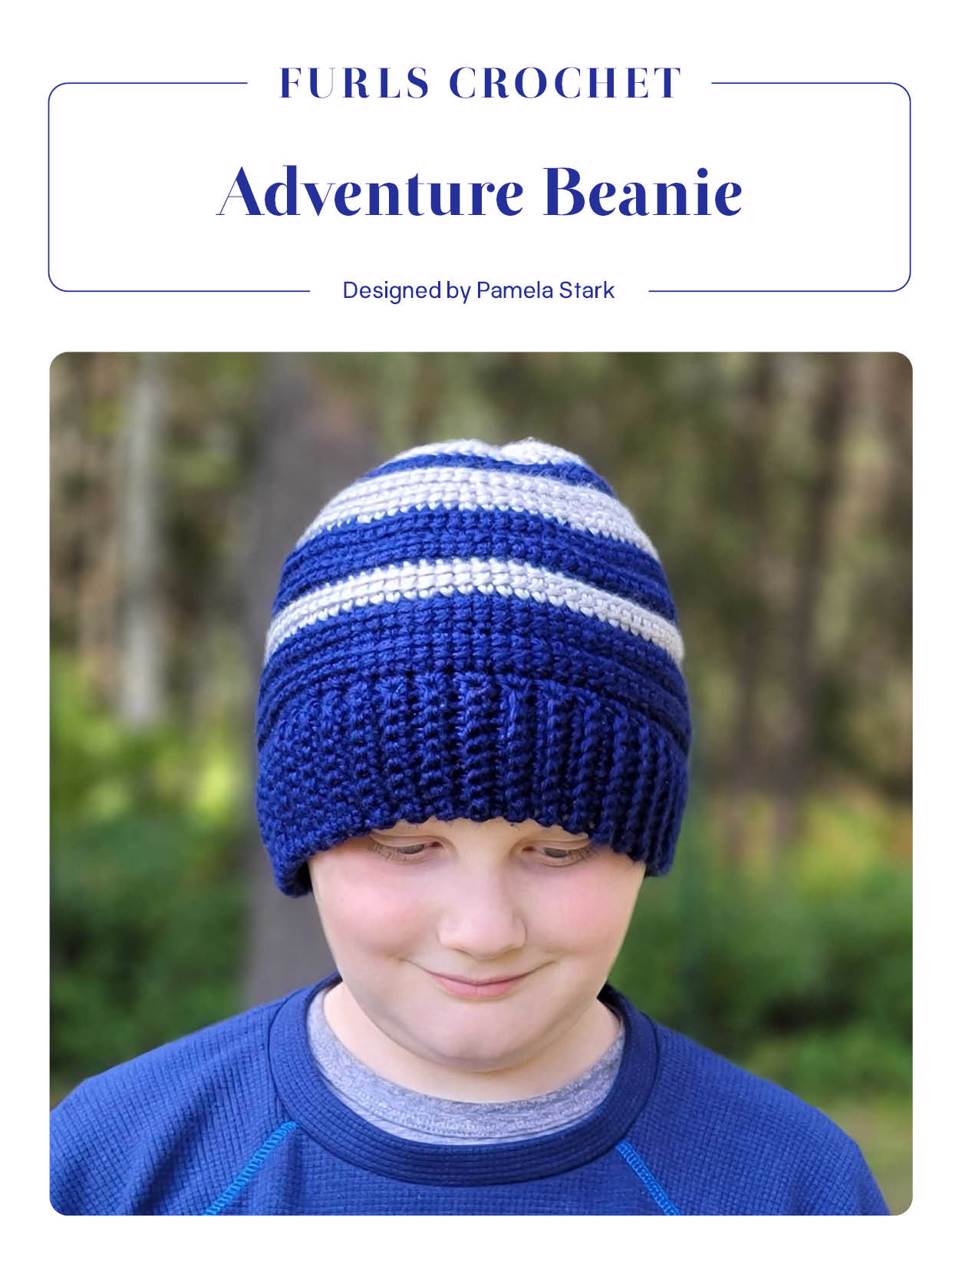 Adventure Beanie Crochet PDF Pattern by Pamela Stark